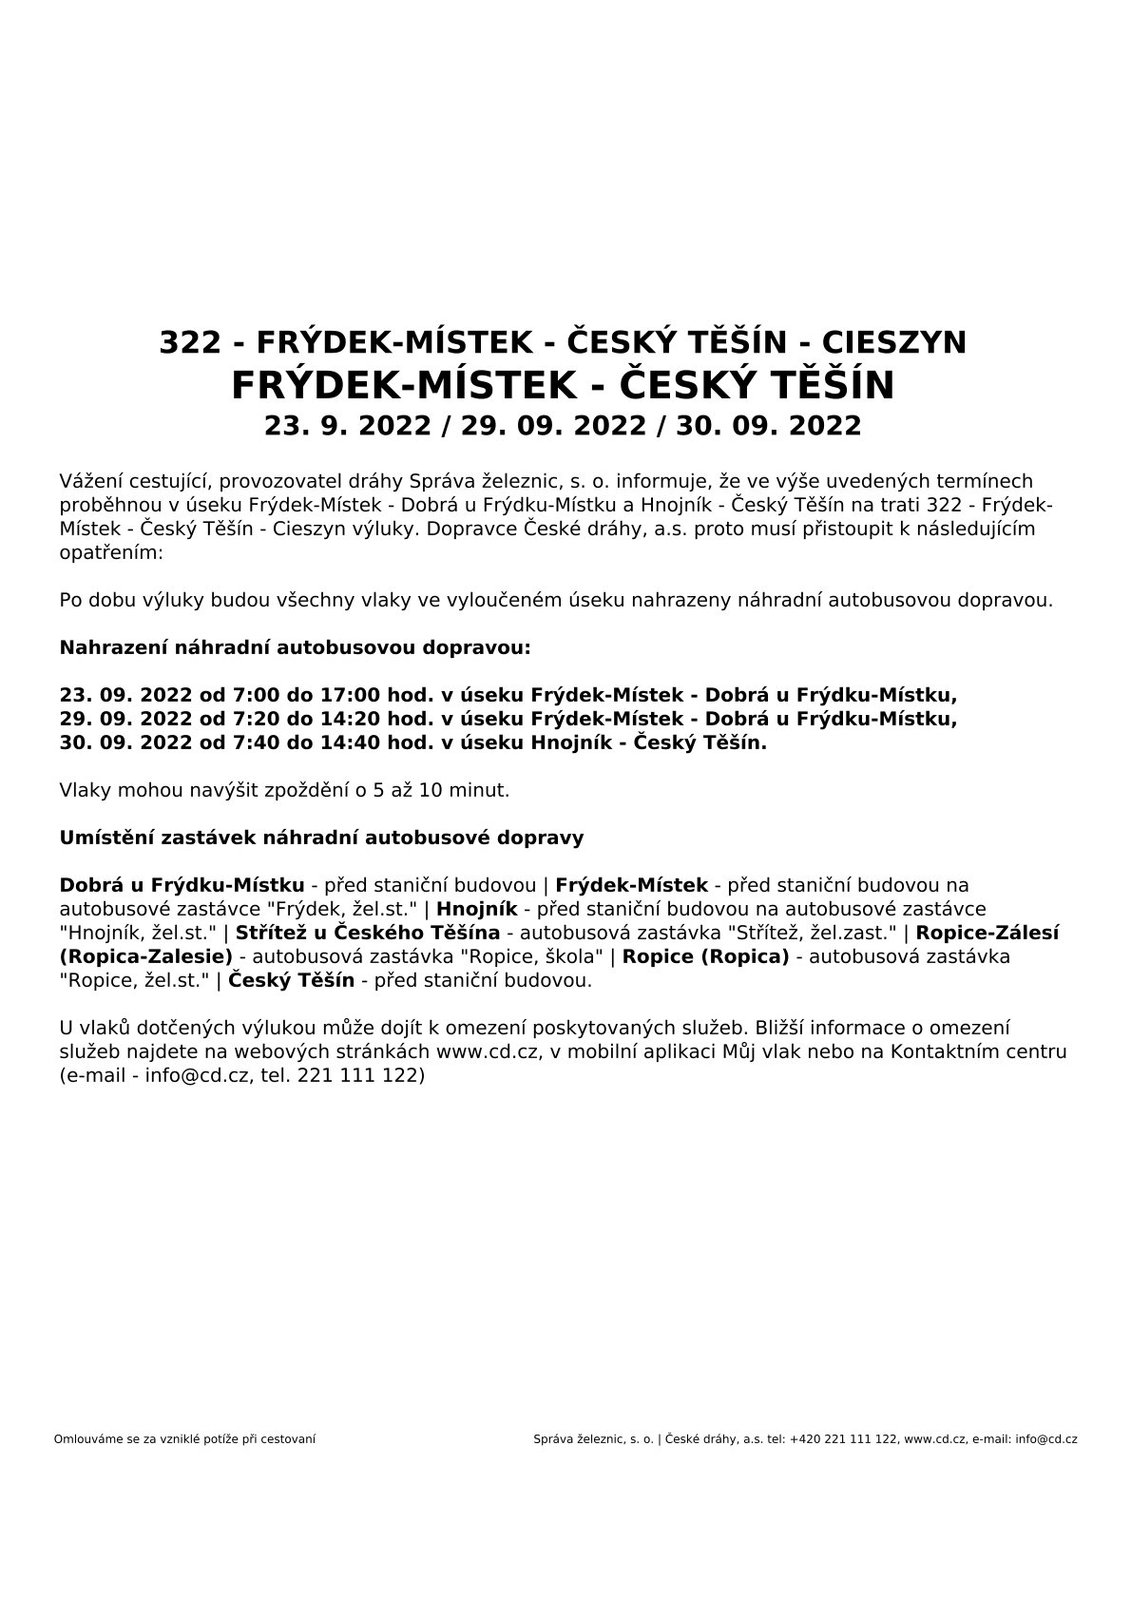 322-Cesky-Tesin-Frydek-Mistek-etapy-23.29.30.09.2022.jpg